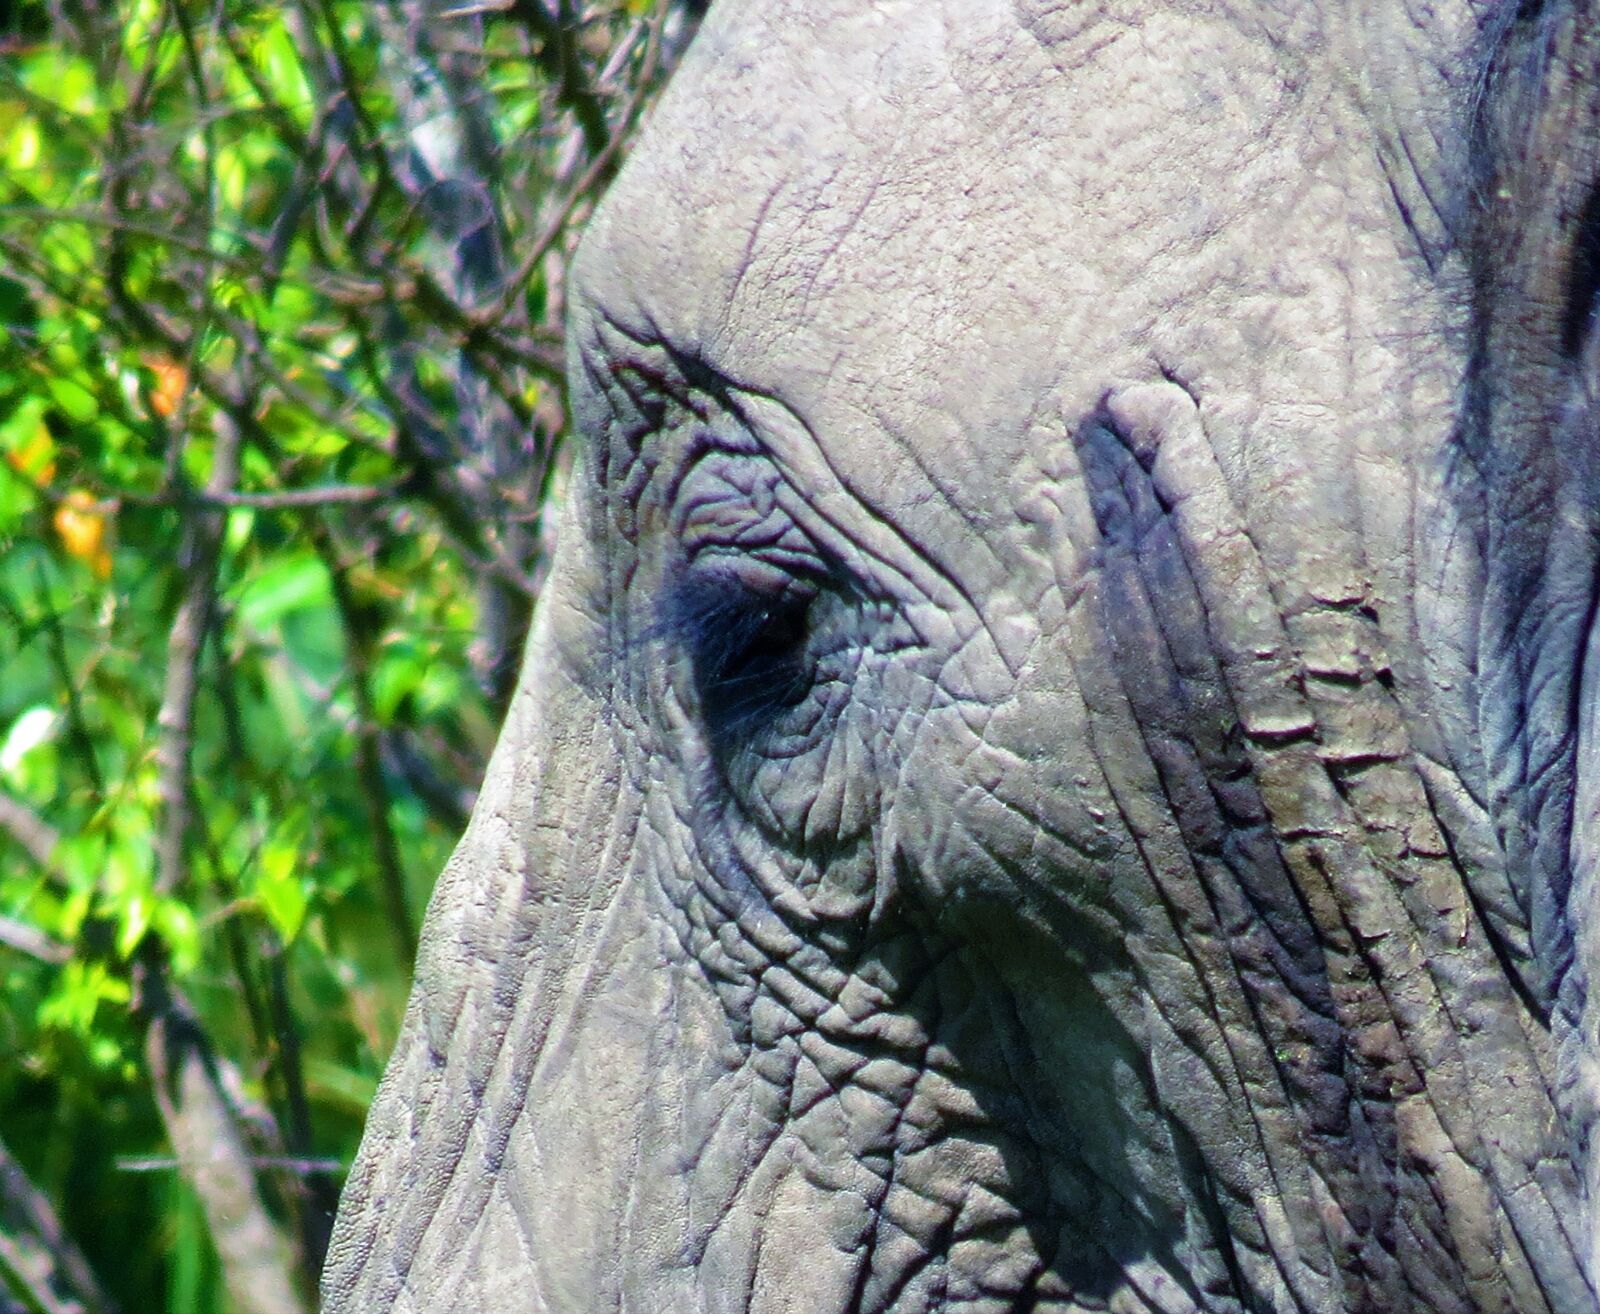 Canon PowerShot SX50 HS sample photo. Elephant, eye, sad photography